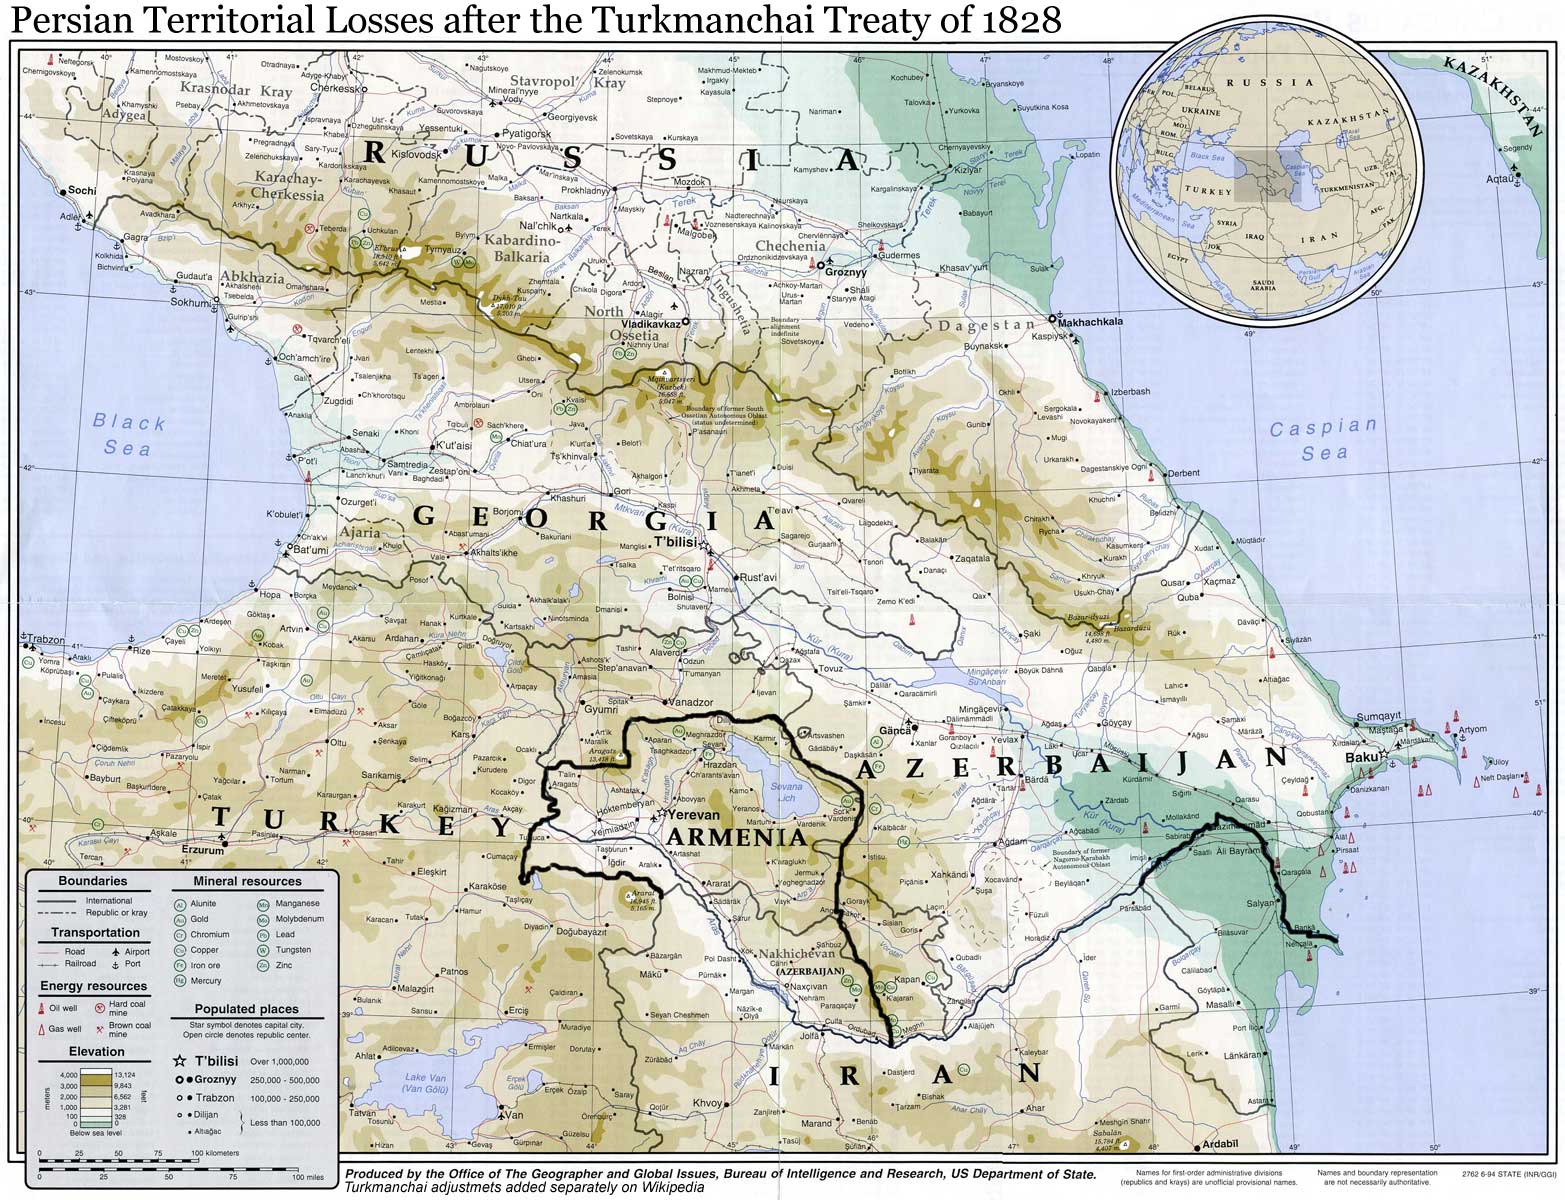 Проходит 187 лет со дня подписания Туркменчайского договора